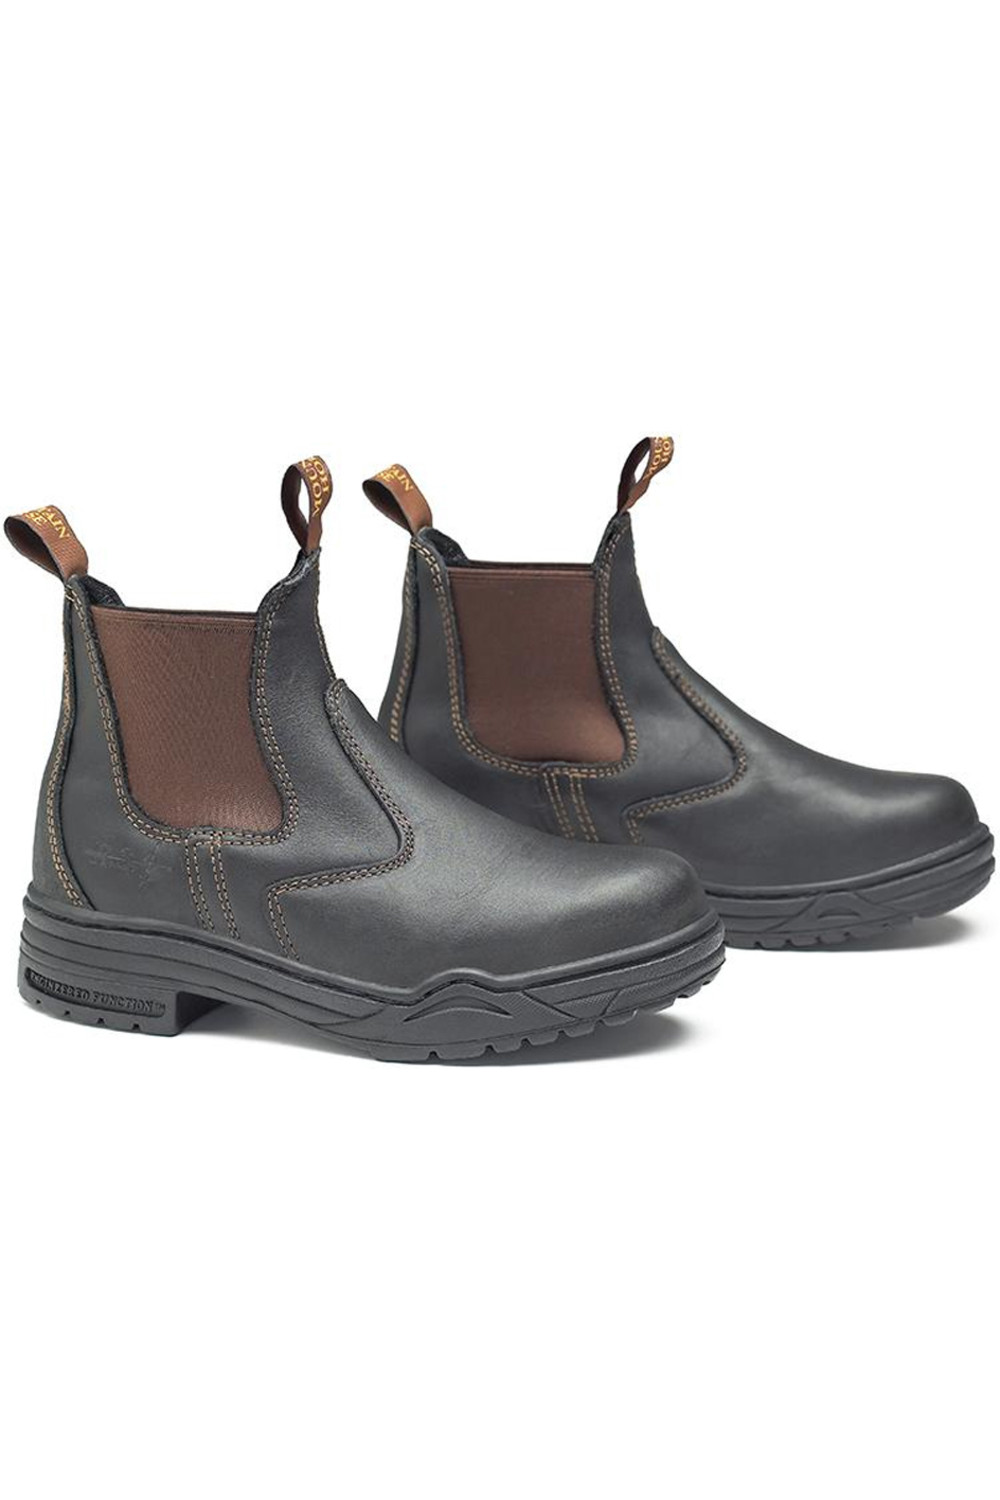 safety jodhpur boots